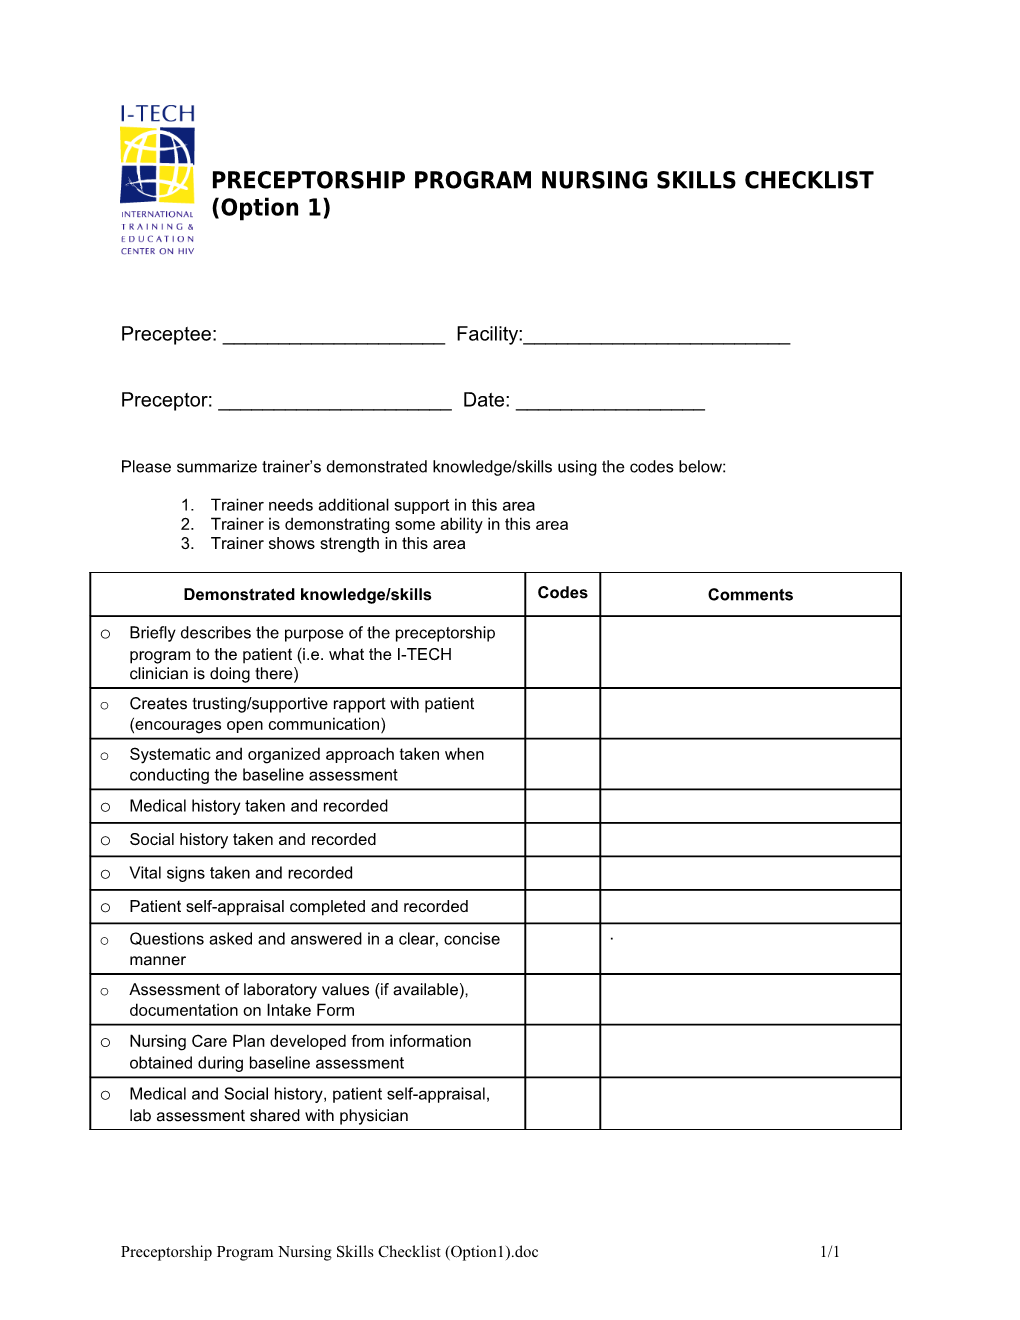 PRECEPTORSHIP PROGRAM NURSING SKILLS CHECKLIST (Option 1)